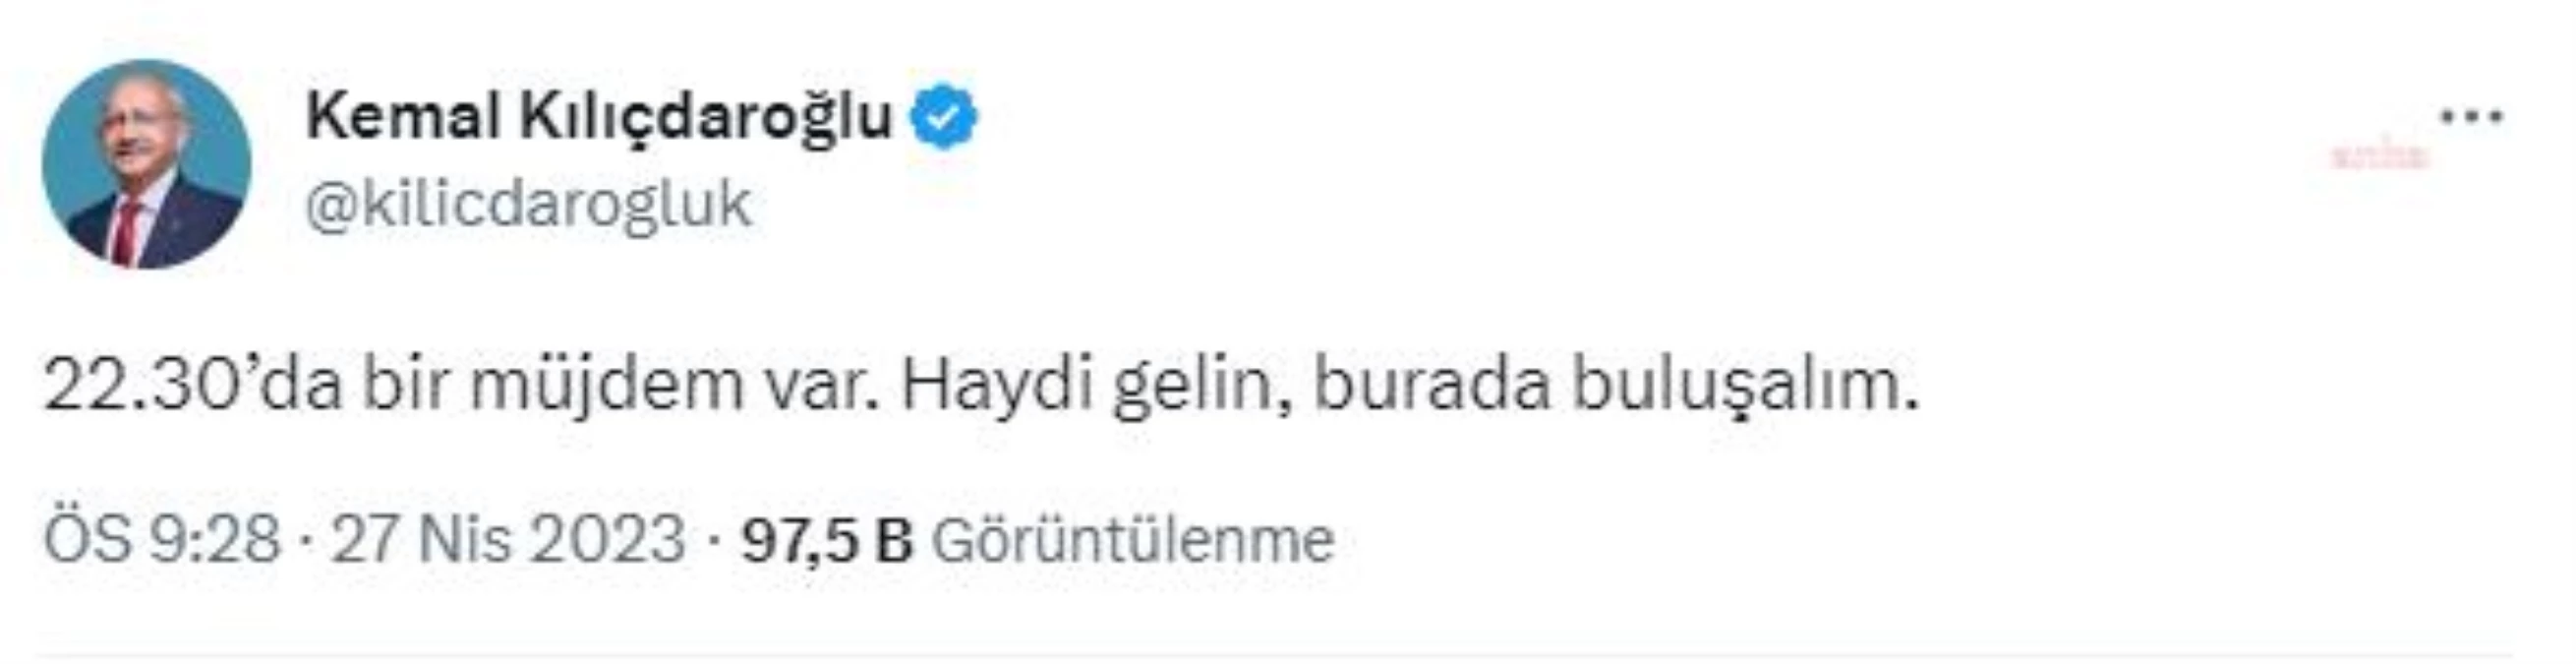 Kılıçdaroğlu, Twitter'da müjde vereceğini duyurdu